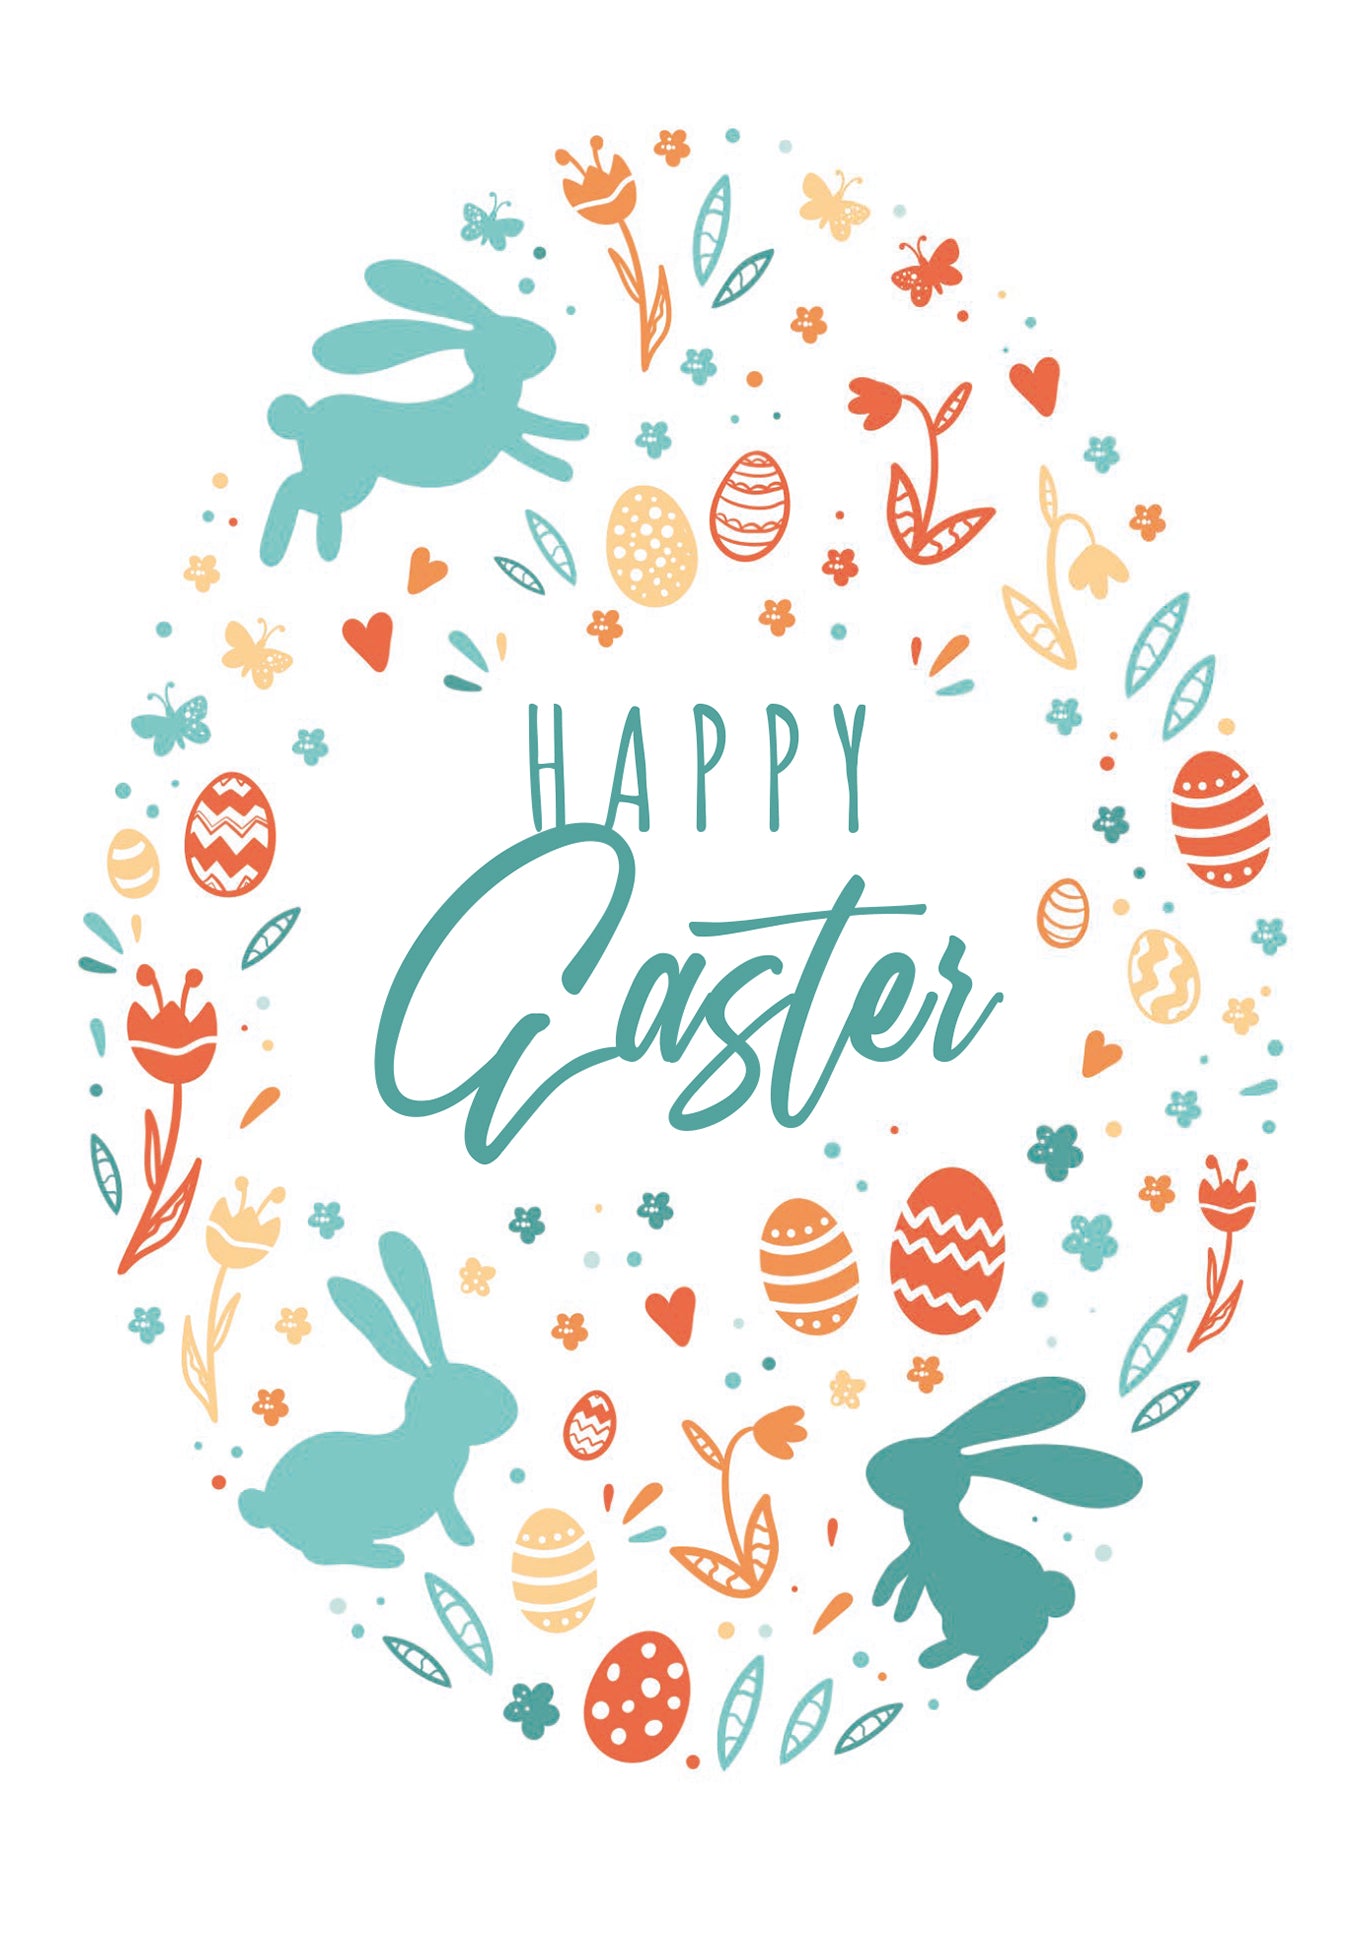 Happy Easter - Ei Bunt (Gutscheinwert)